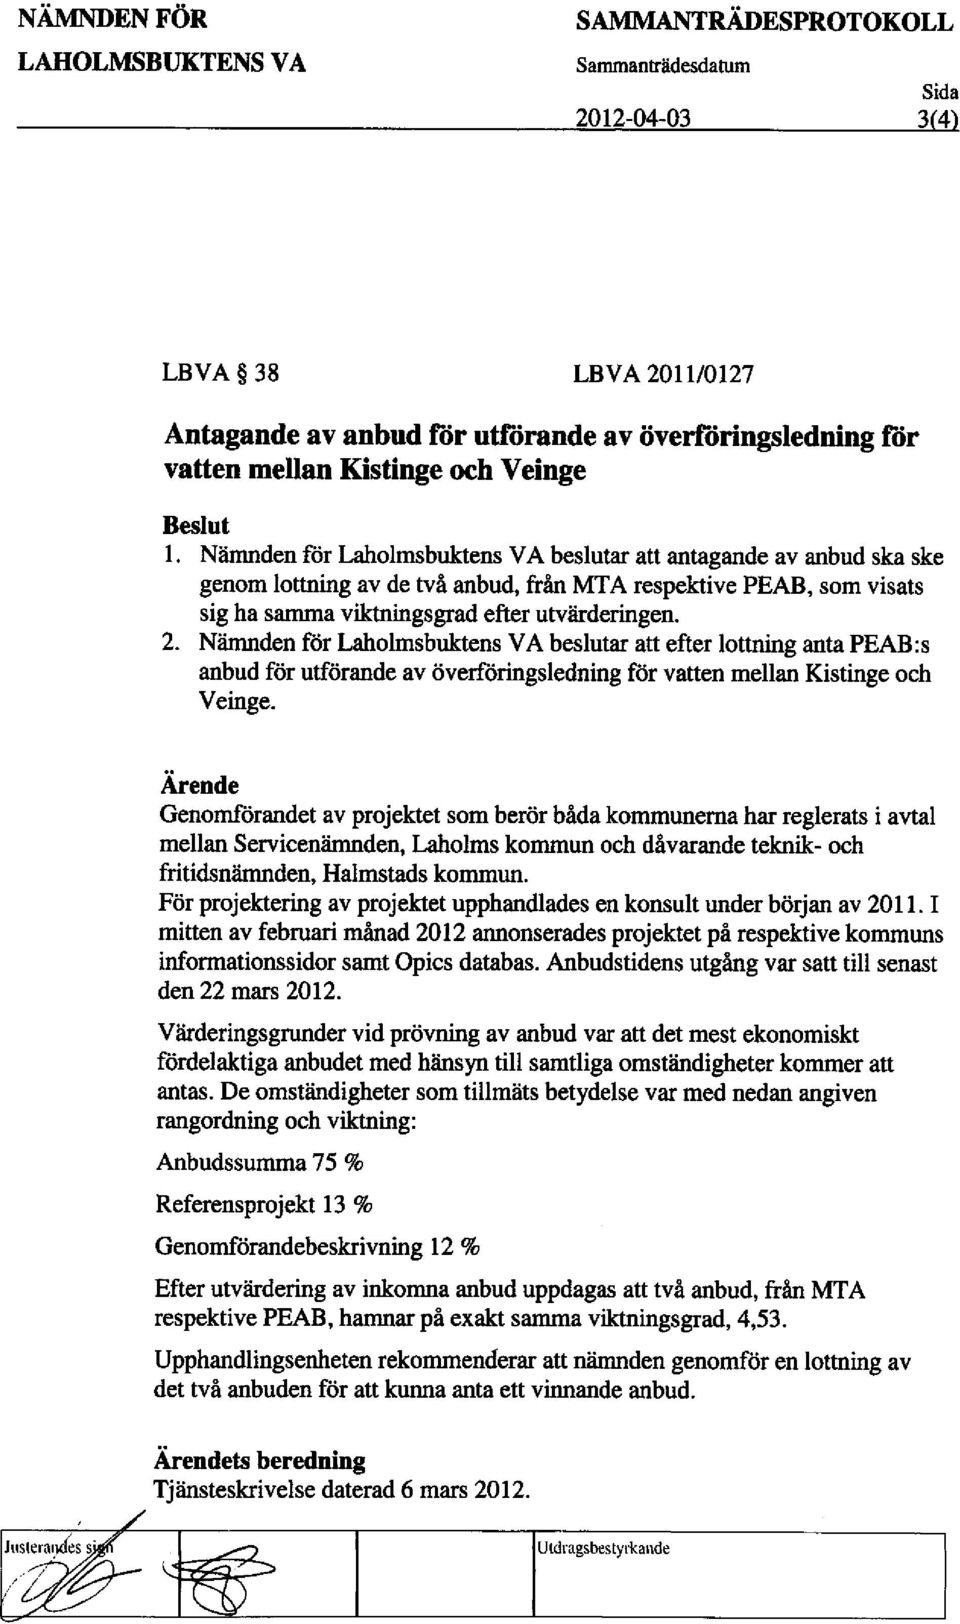 Nimnden for Laholmsbuktens VA beslutar att efter lottning anta PEAB:s anbud for utforande av OverfOringsledning for vatten mellan Kistinge och Veinge.